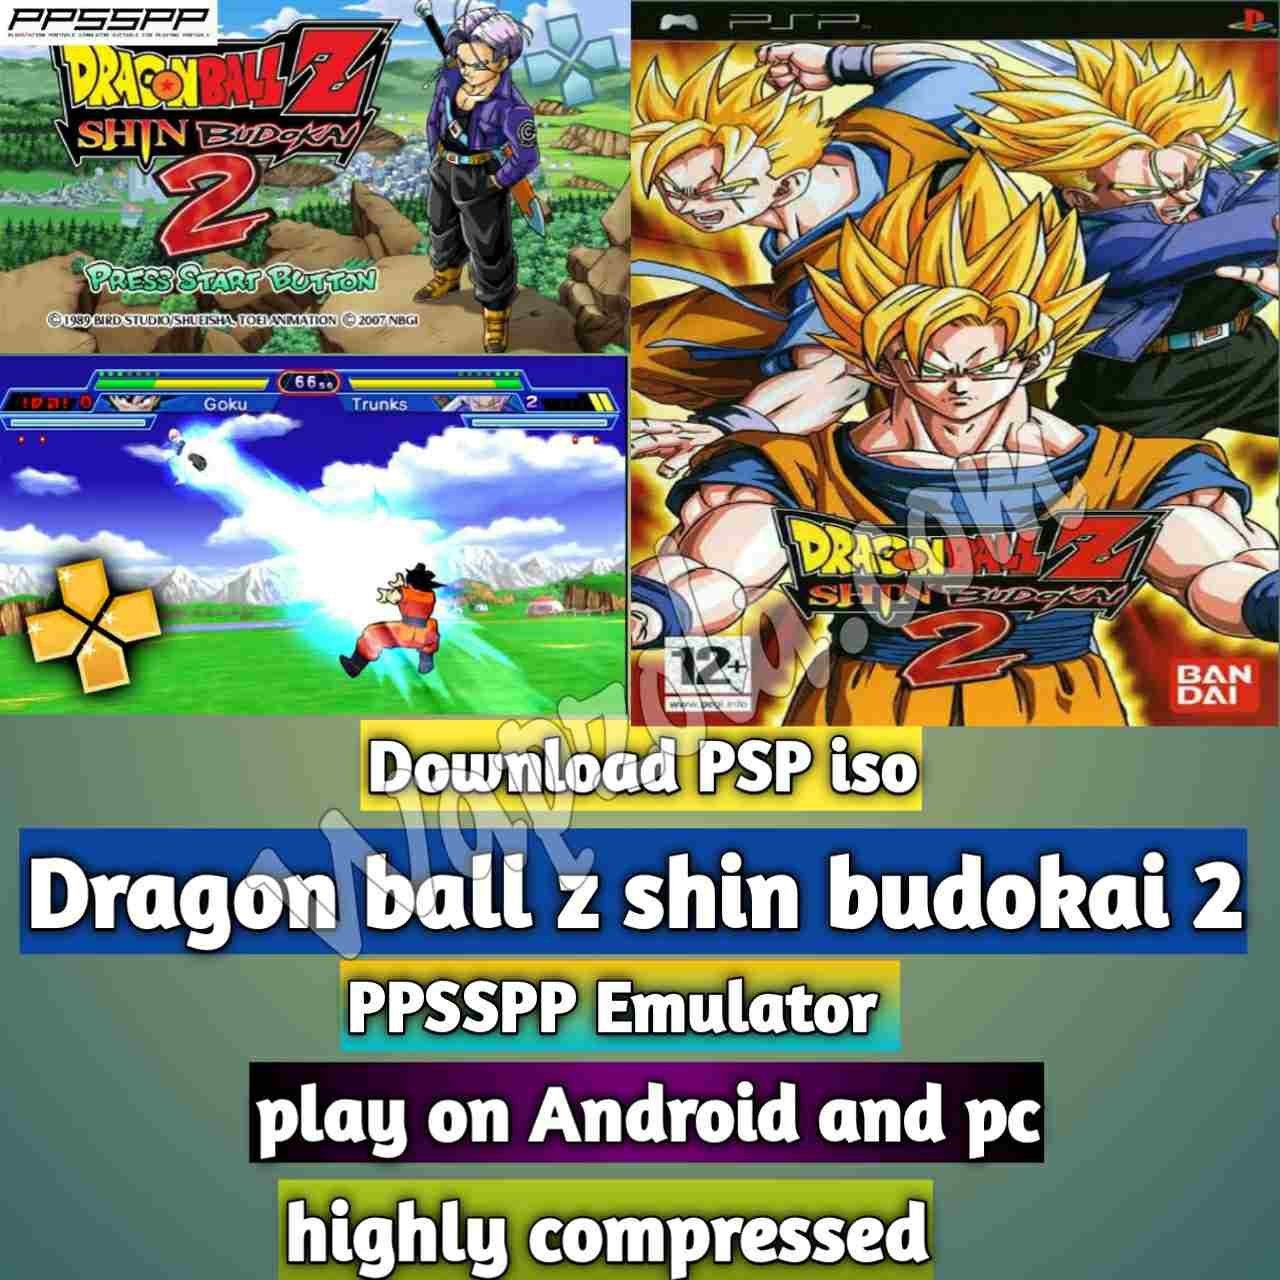 Lire la suite à propos de l’article [Télécharger] Dragon ball z shin budokai 2 iso ppsspp emulator – PSP APK Iso ROM hautement compressé 300MB